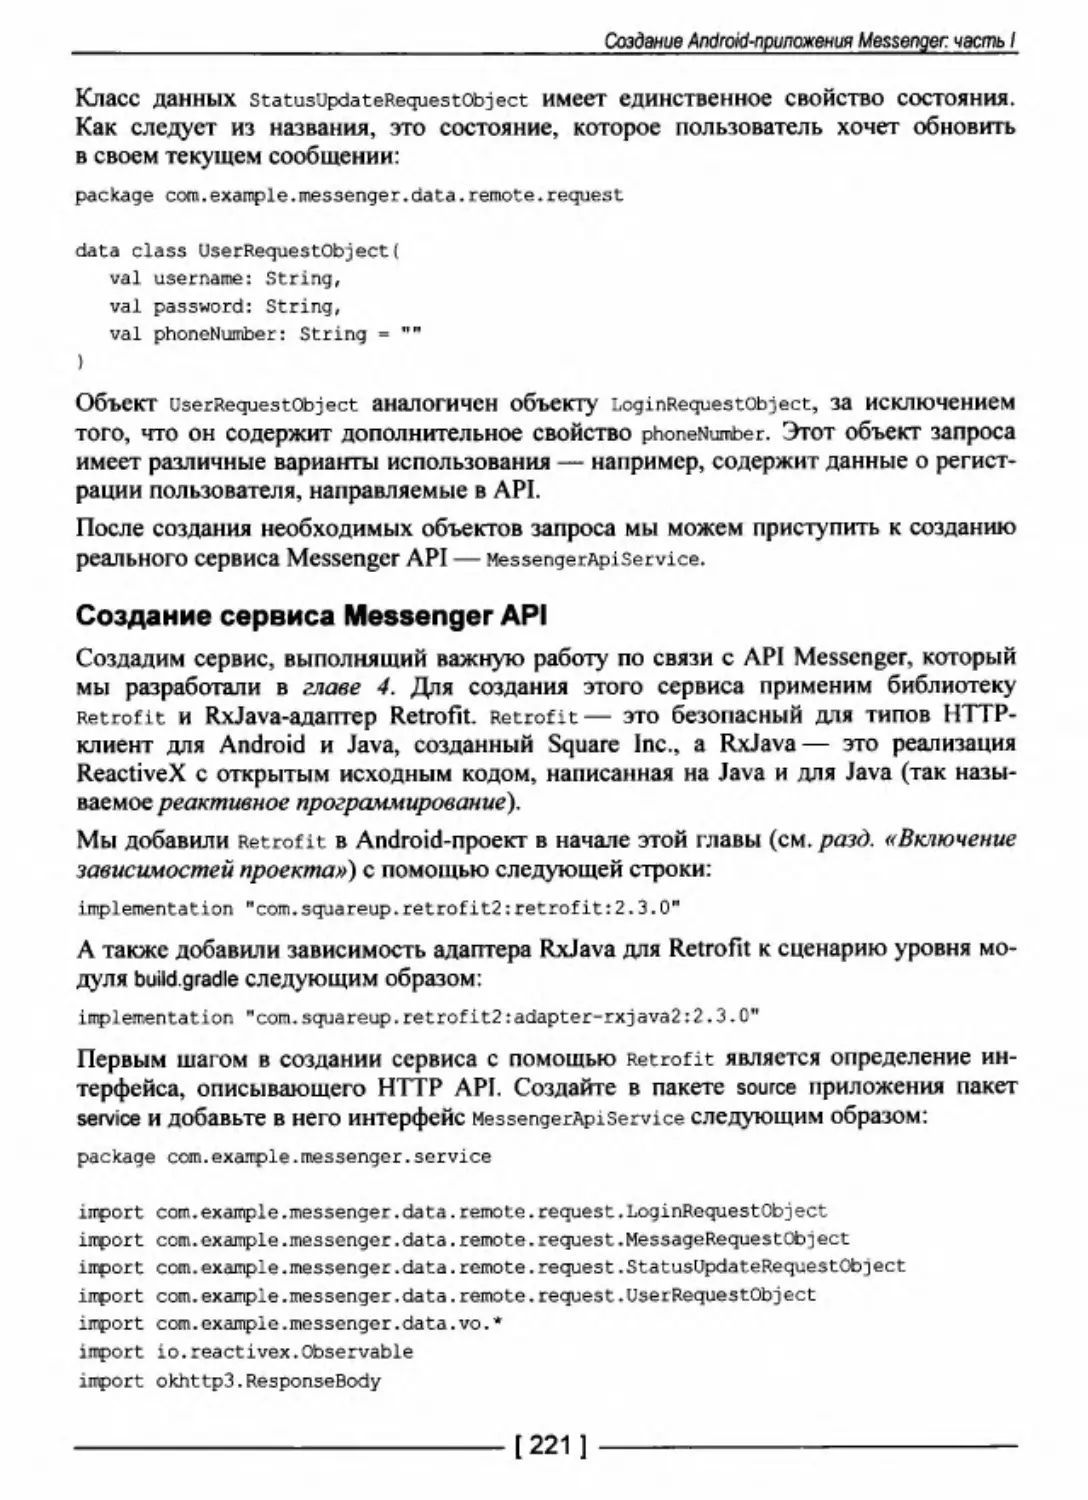 Создание сервиса Messenger API